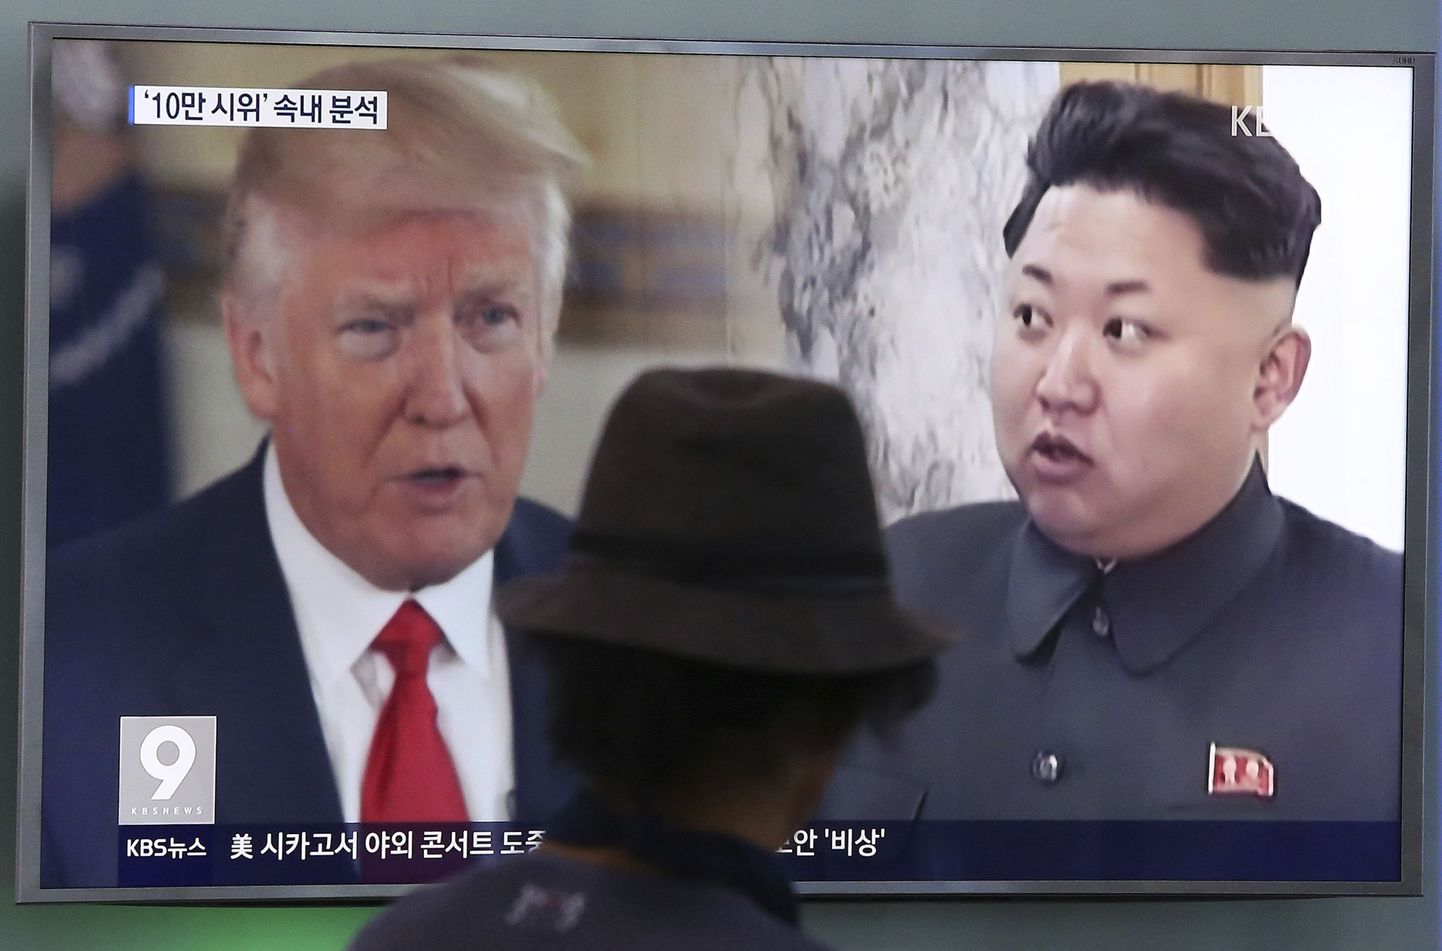 Ühendriikide president Donald Trump ja Põhja-Korea liider Kim Jong-un